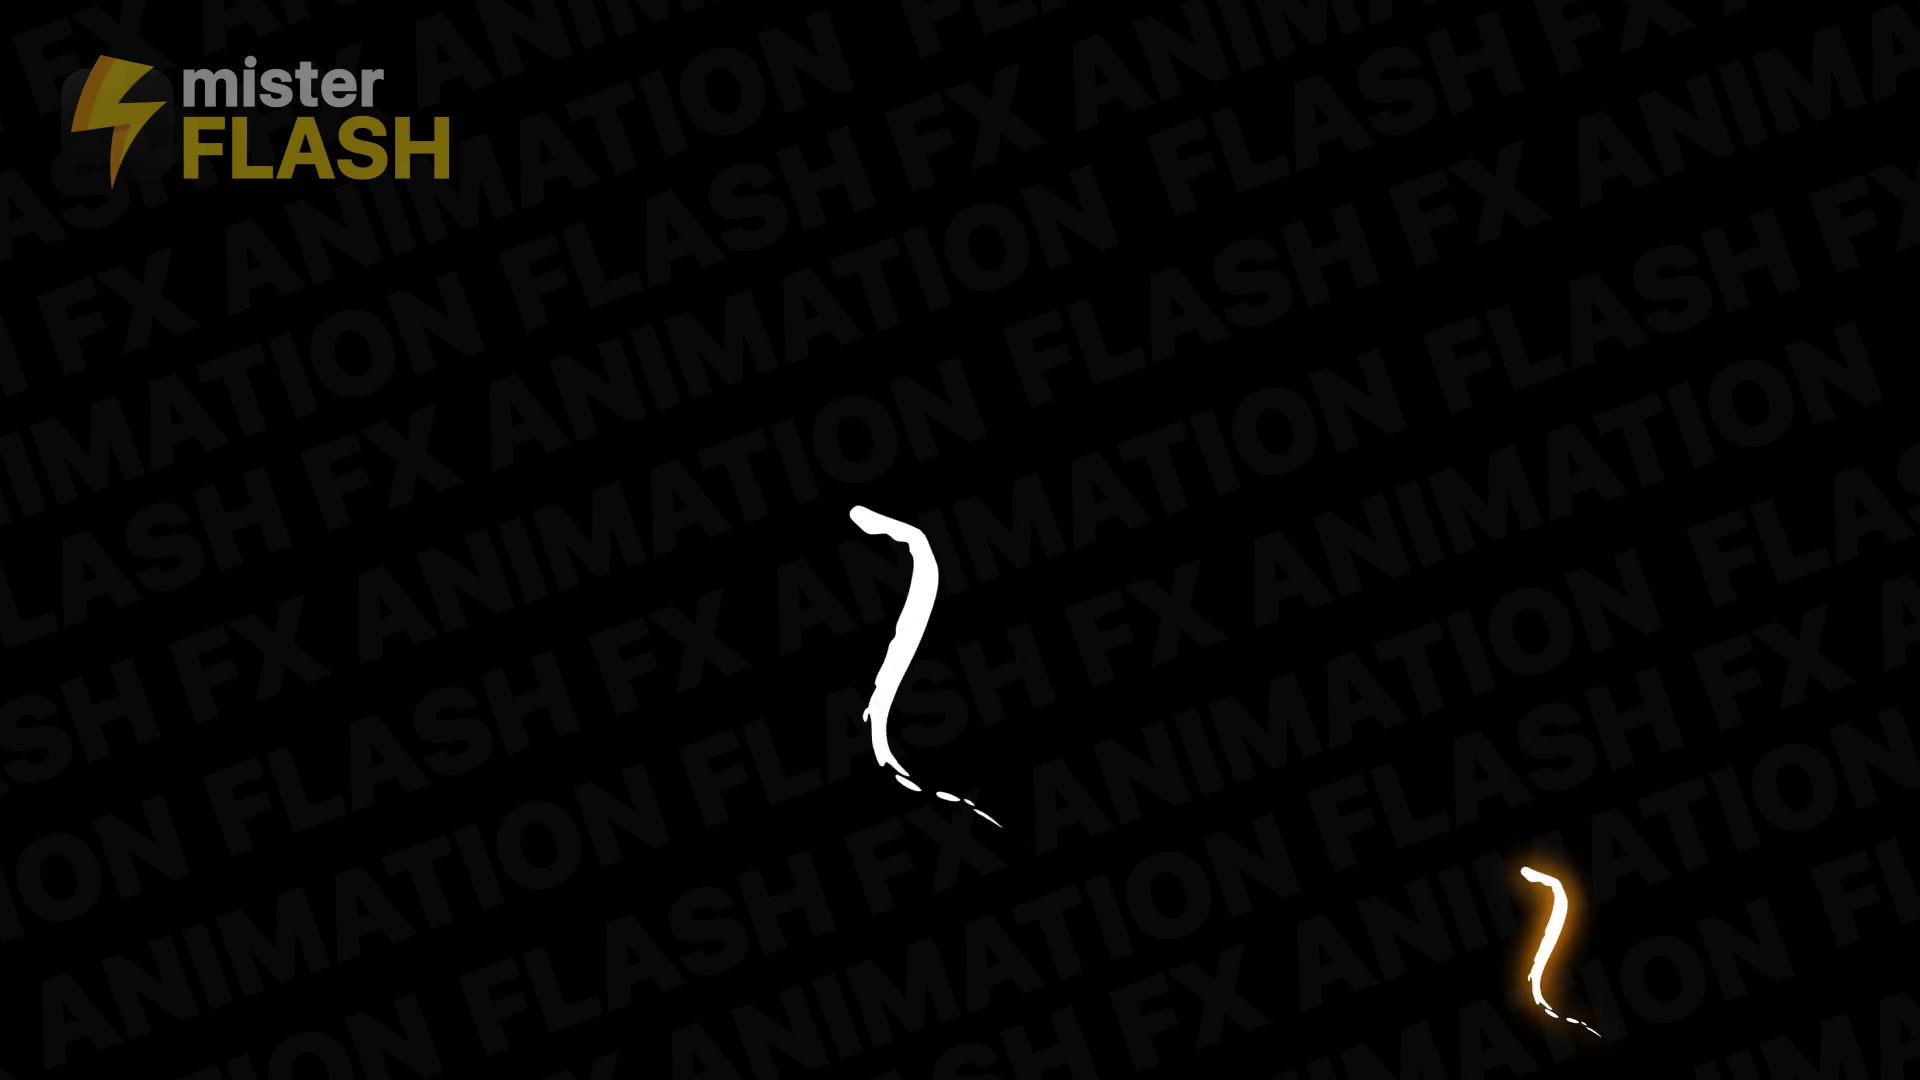 Flash FX Elements Pack 08 | Premiere Pro MOGRT Videohive 26745012 Premiere Pro Image 8